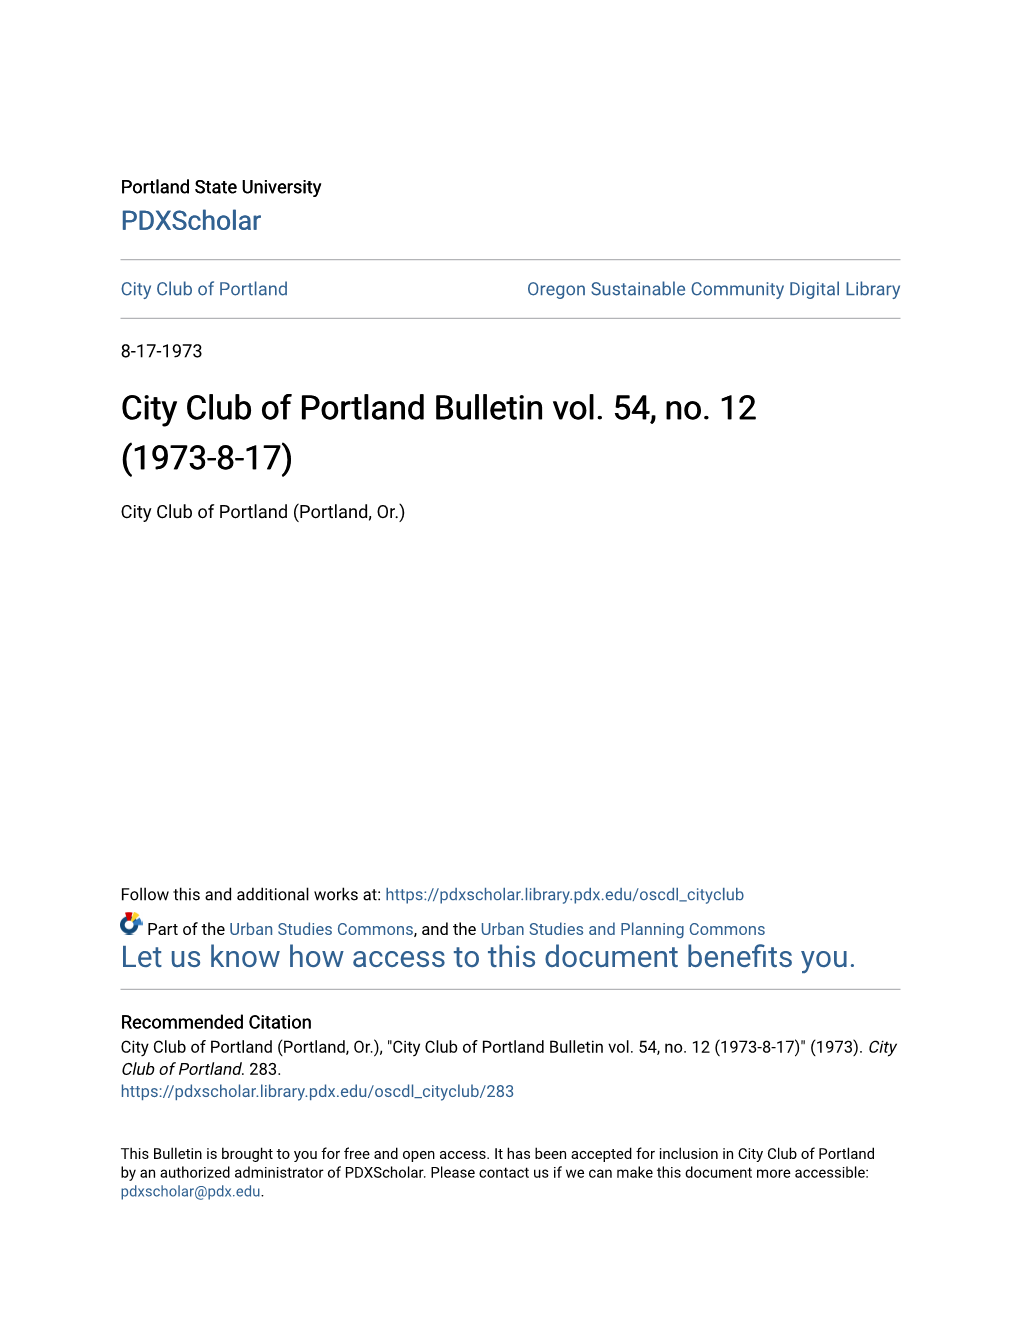 City Club of Portland Bulletin Vol. 54, No. 12 (1973-8-17)